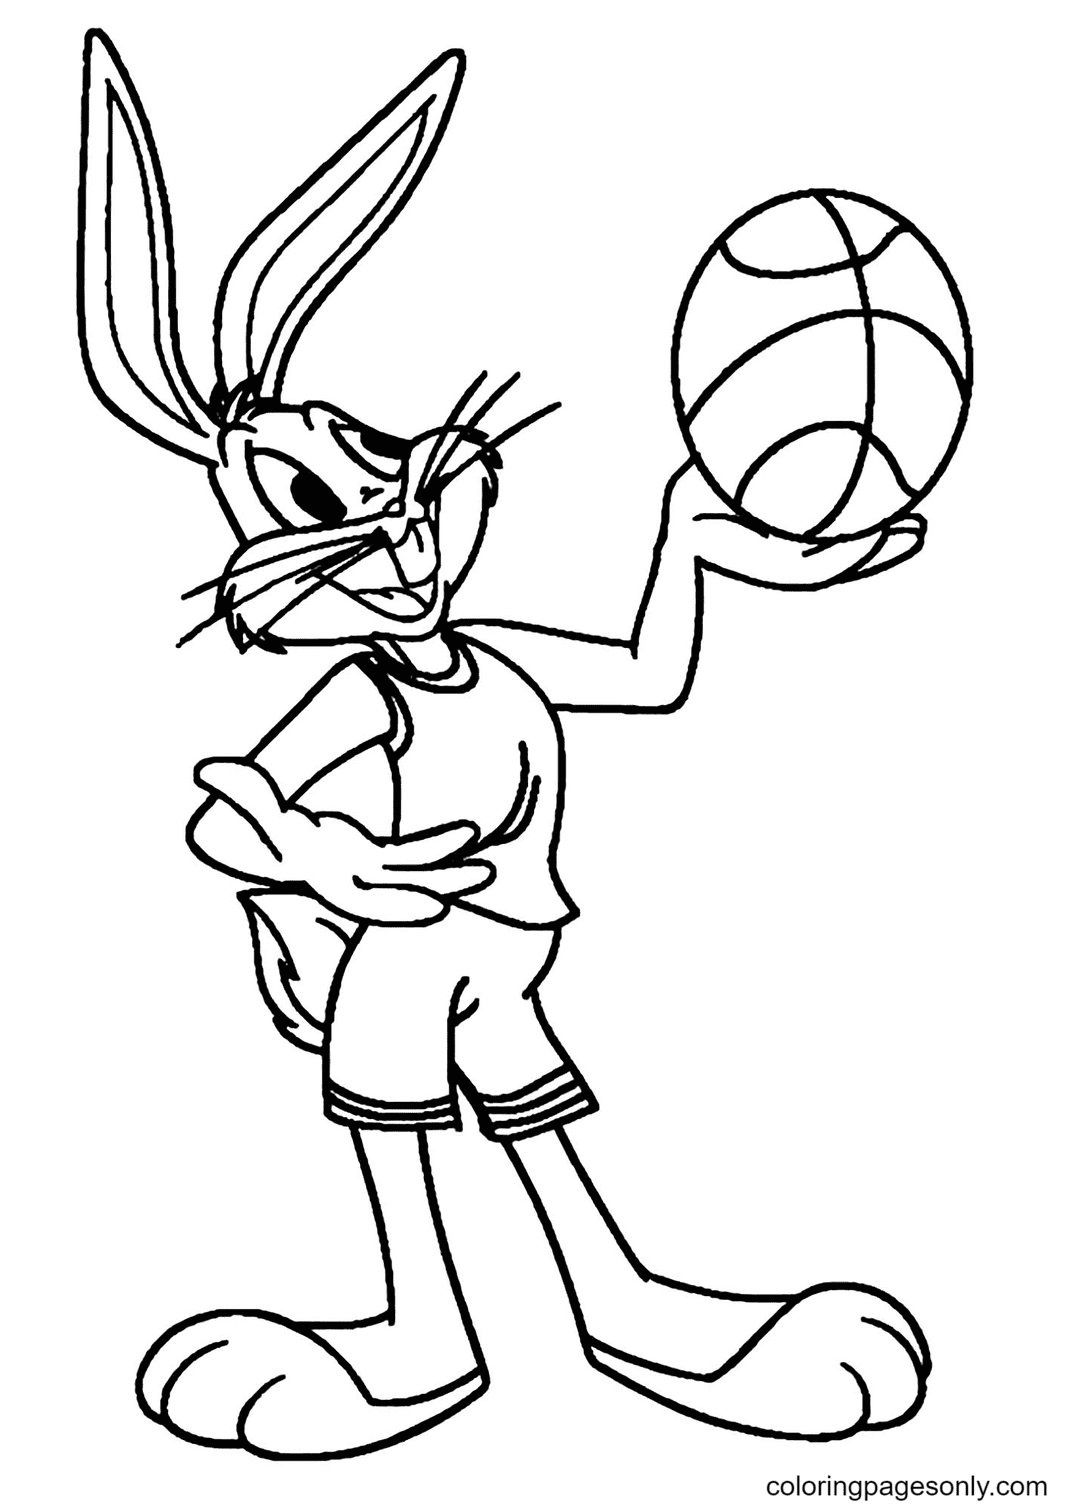 Desenho de Bugs Bunny segurando uma bola de basquete para colorir